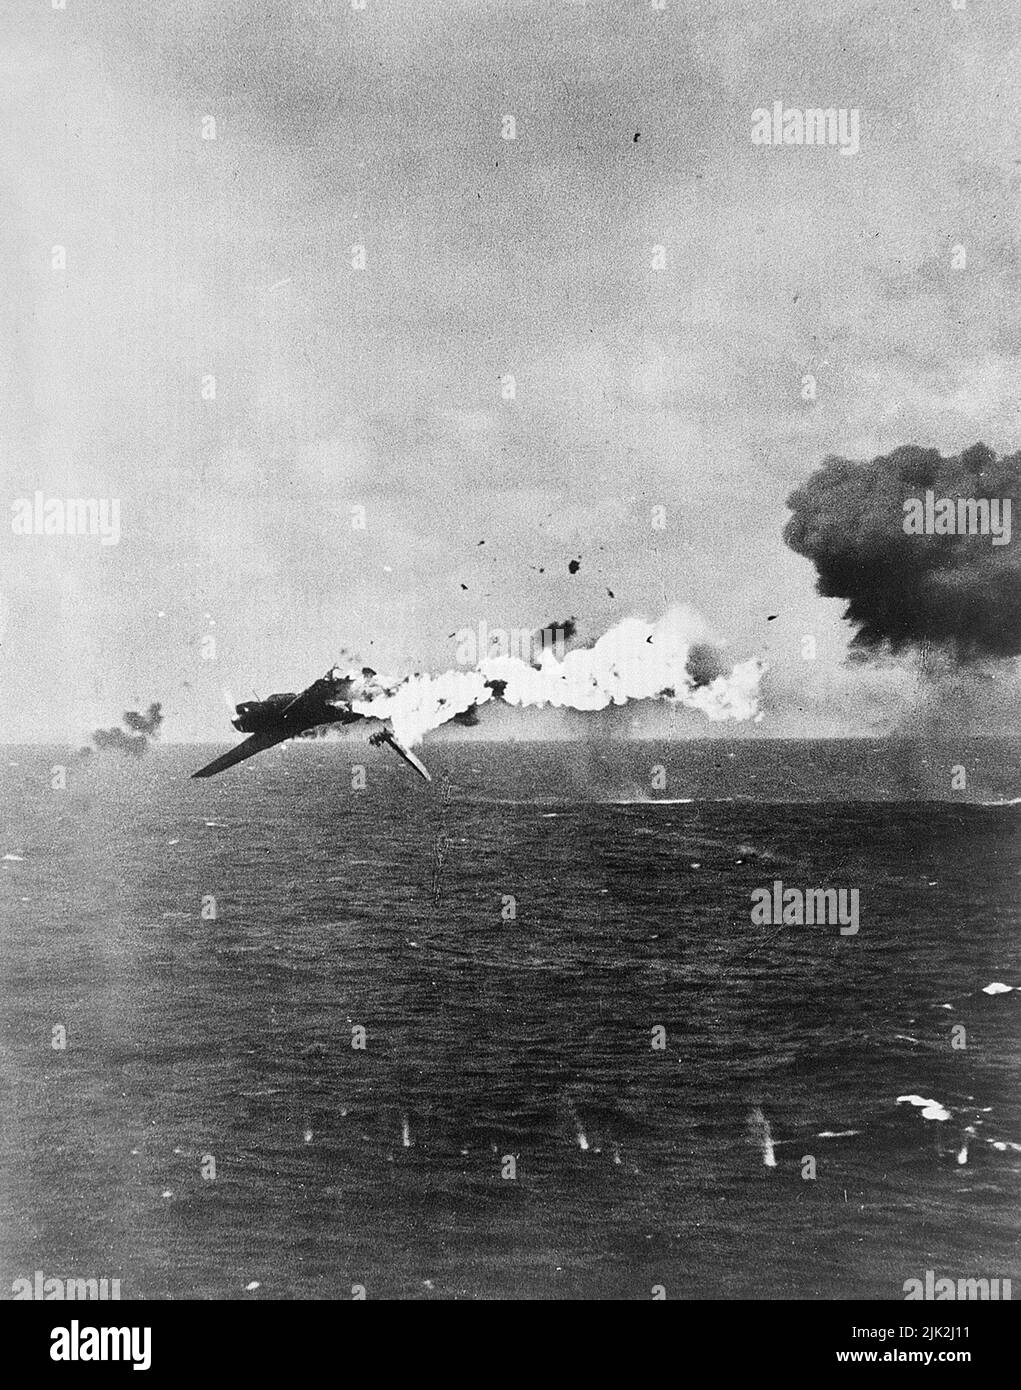 Ein japanischer Torpedo-Bomber, der nach einem direkten Angriff des US-Flugzeugträgers auf einen 5-Zoll-Panzer vor Kwajalein verbrannt wurde. Stockfoto